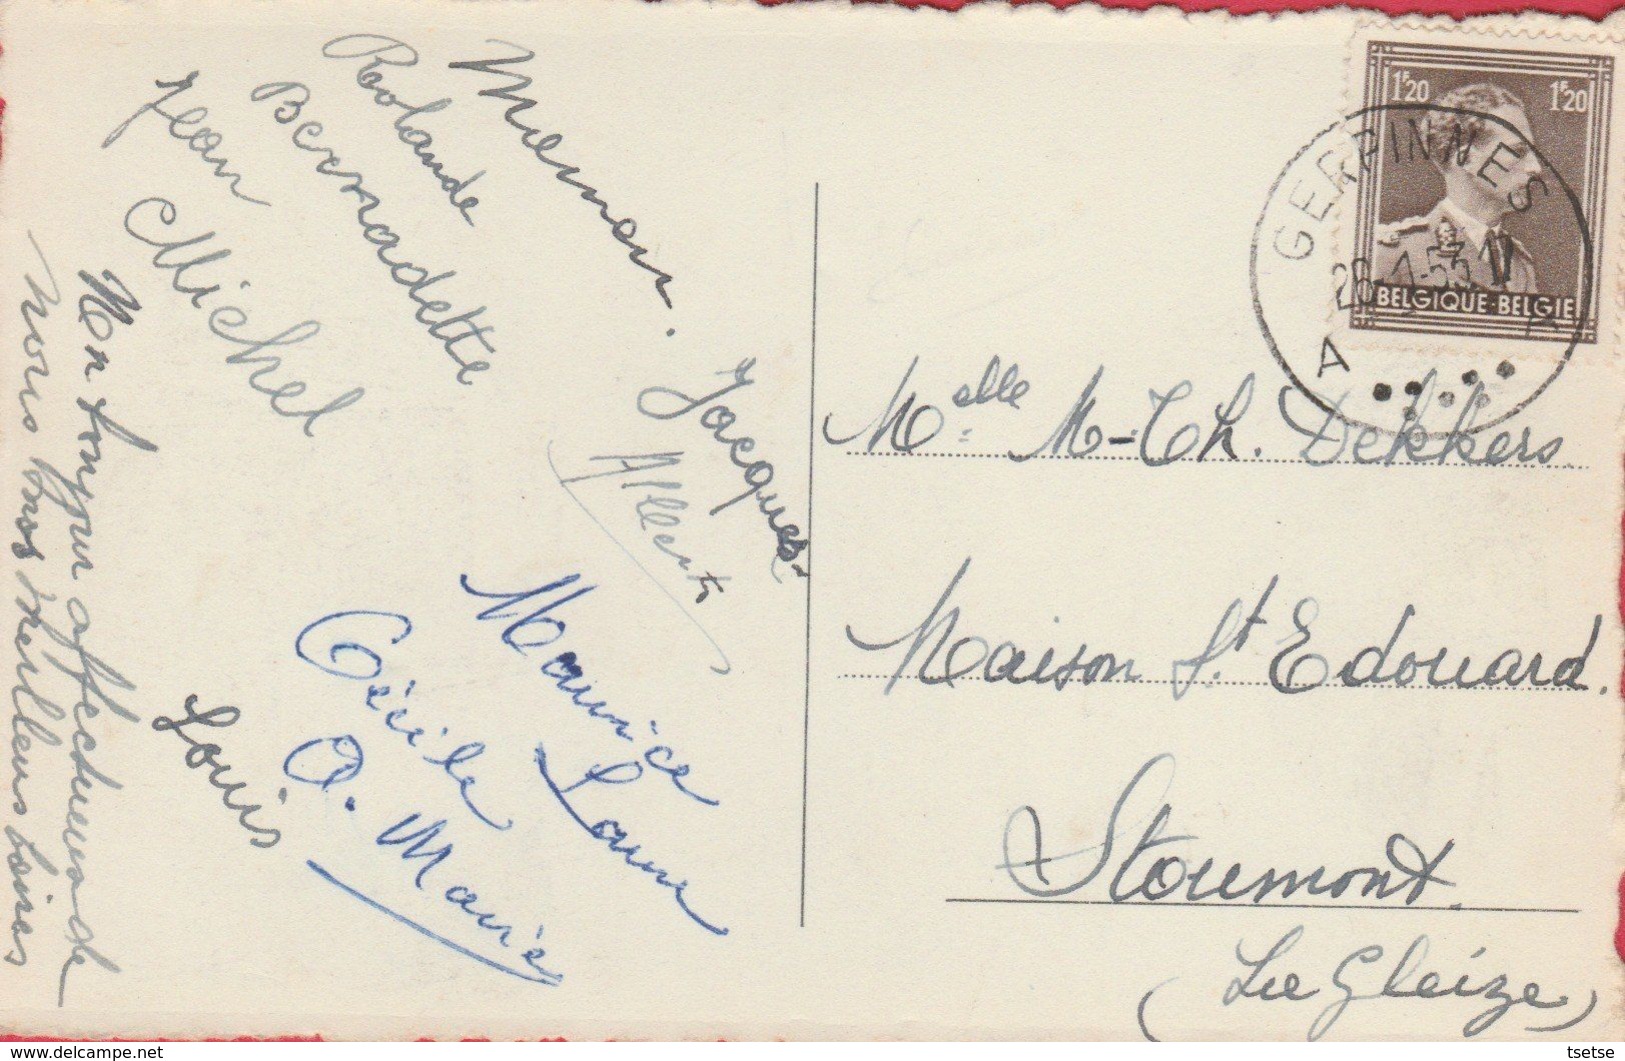 Gerpinnes - Souvenir De ... Carte Multivues - 1953 ( Voir Verso ) - Gerpinnes